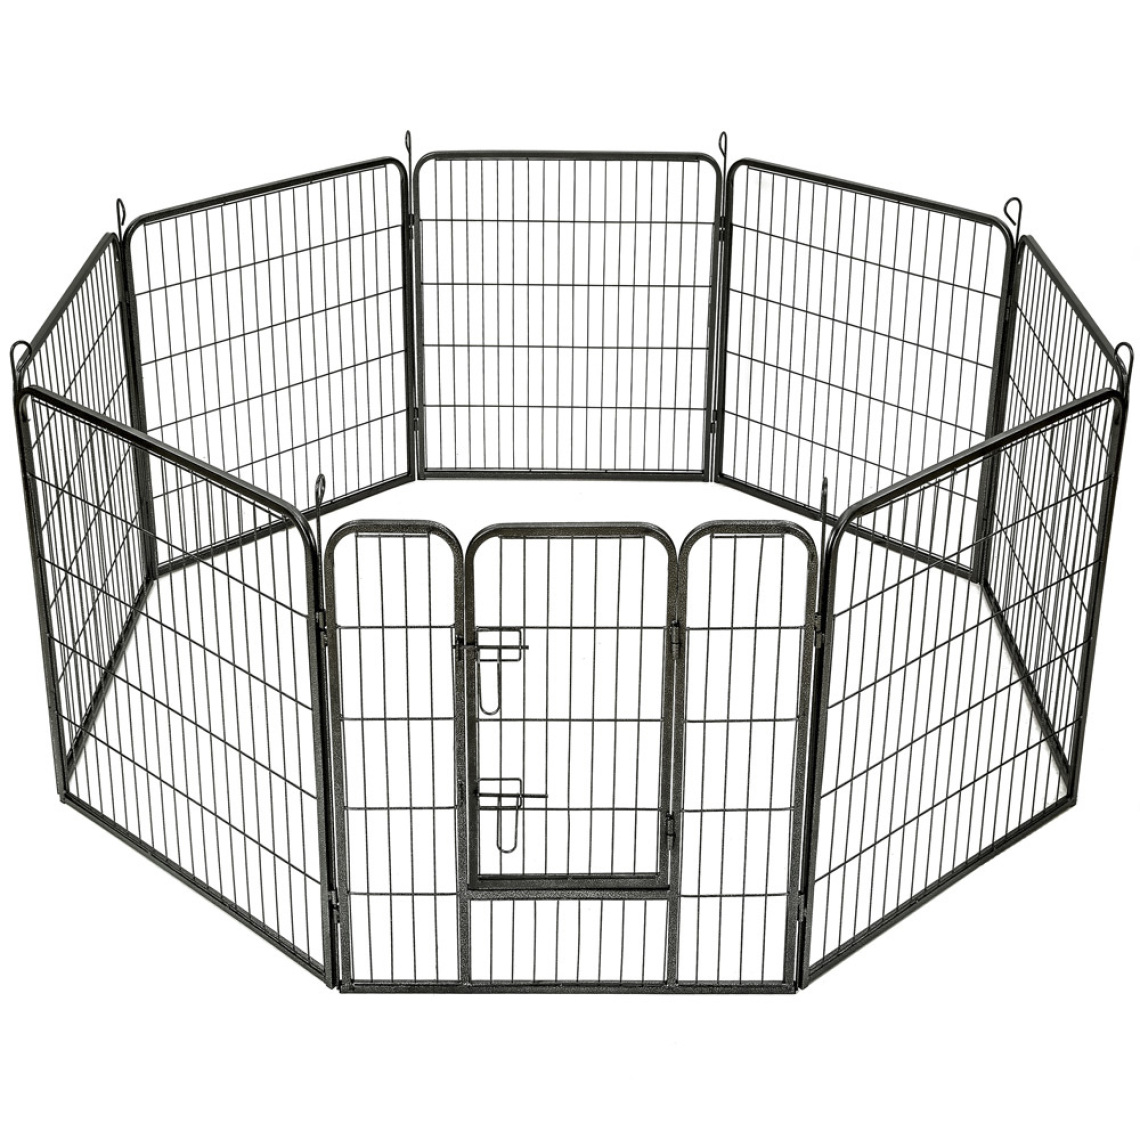 Tectake - Enclos pour chien modulable - 80 cm - Clôture pour chien